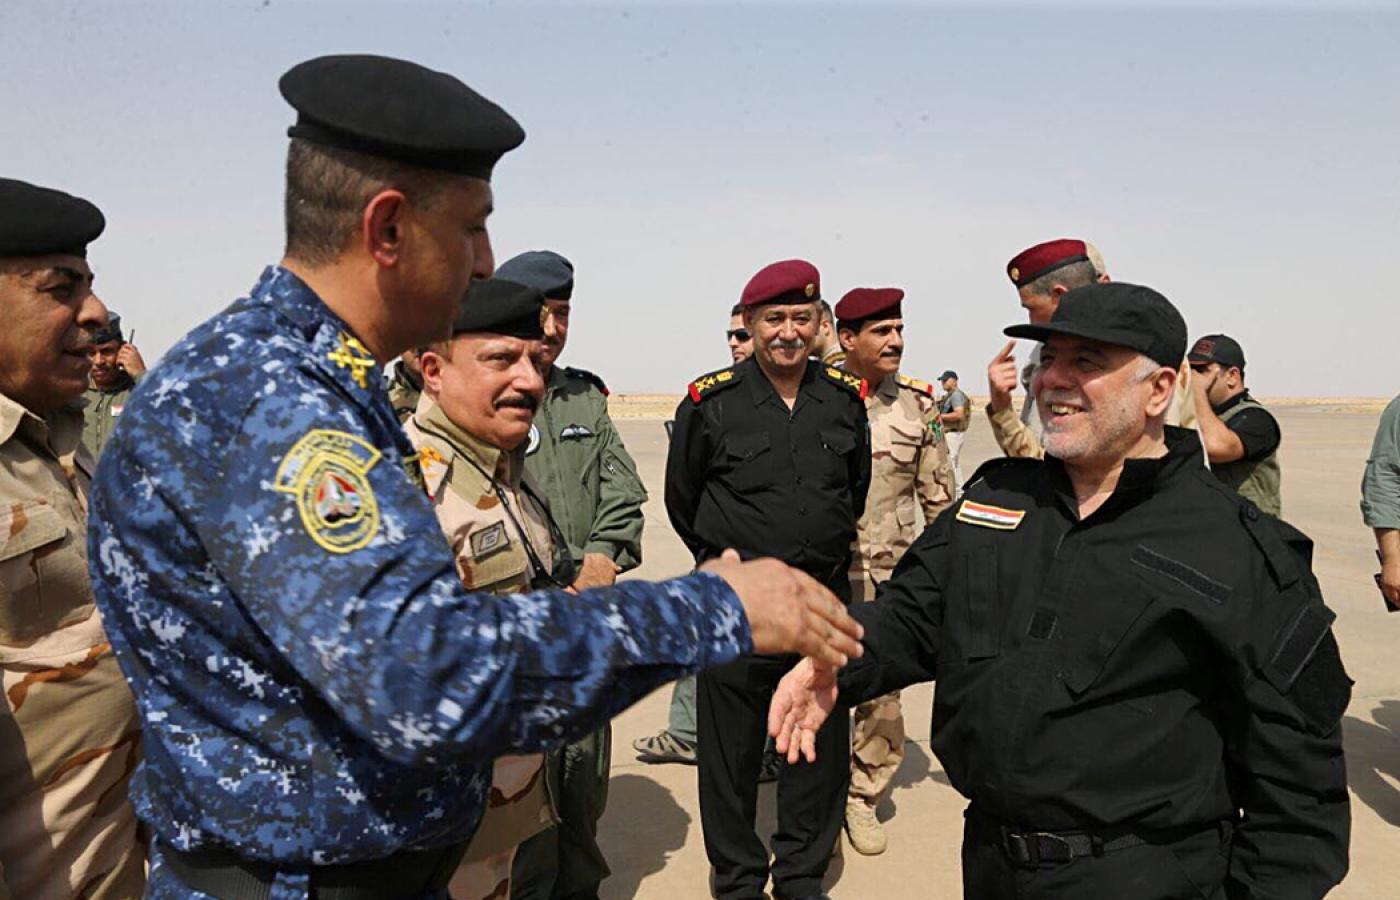 Premier Iraku Haider al-Abadi pojechał do Mosulu, aby złożyć gratulacje za zwycięstwo nad siłami dżihadystów w Mosulu.